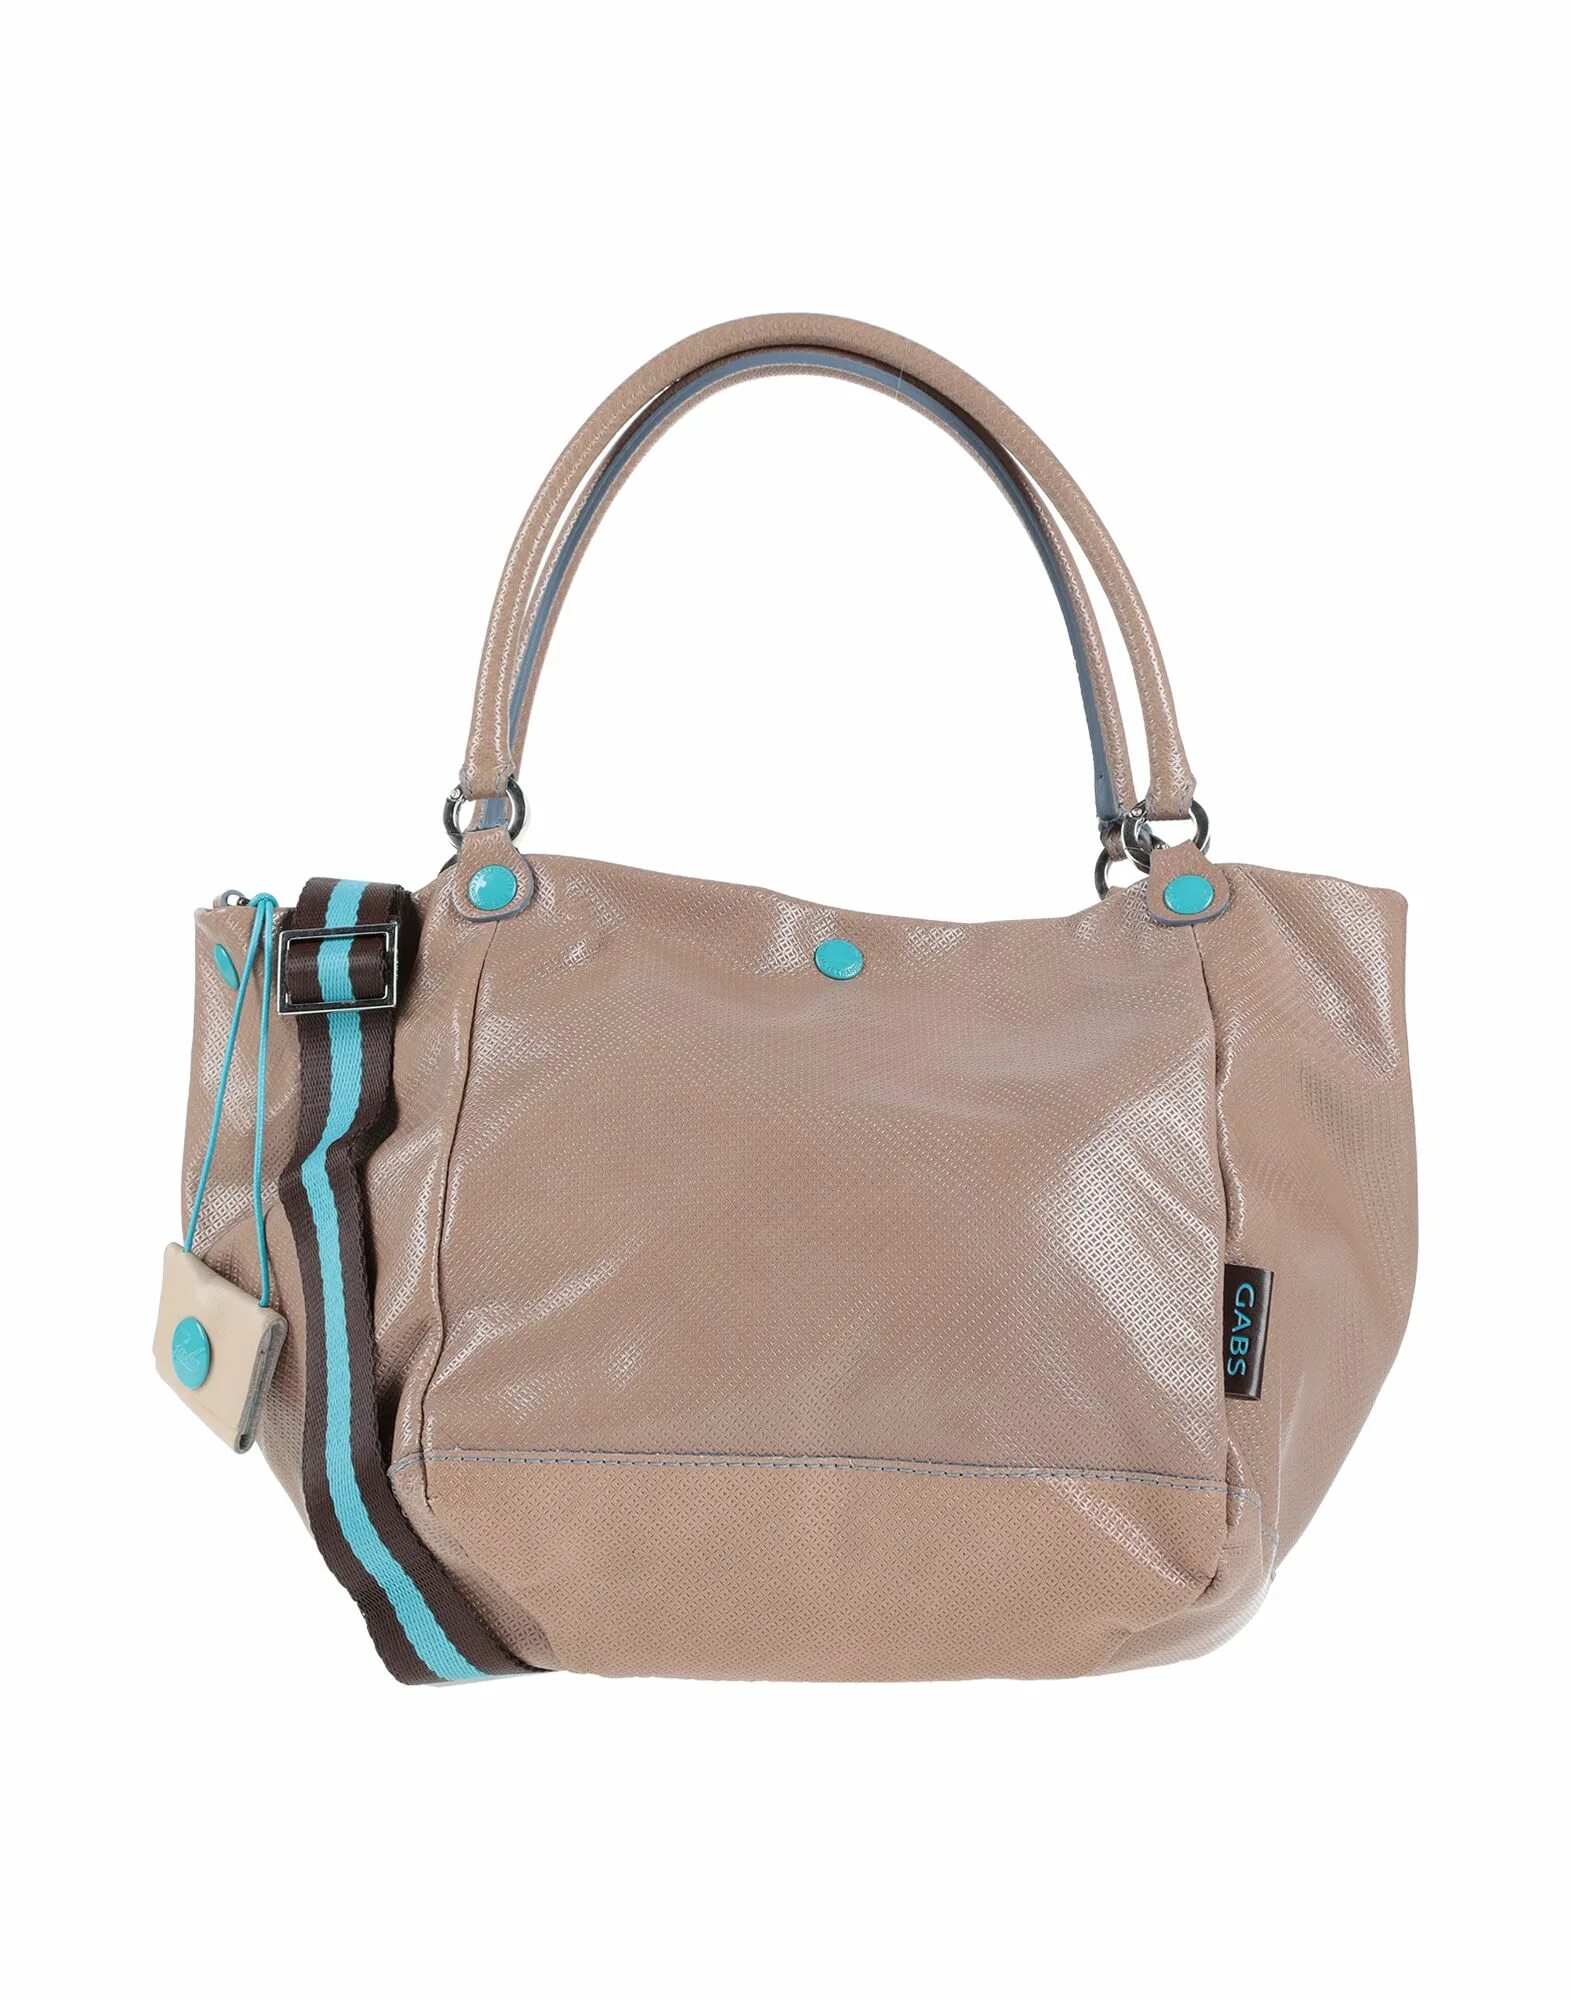 Сумки gabs. Genuine Leather cuero autentico сумка gabs. Сумки женские gabs. Gabs сумки Mini. Сумка gabs коричневая.